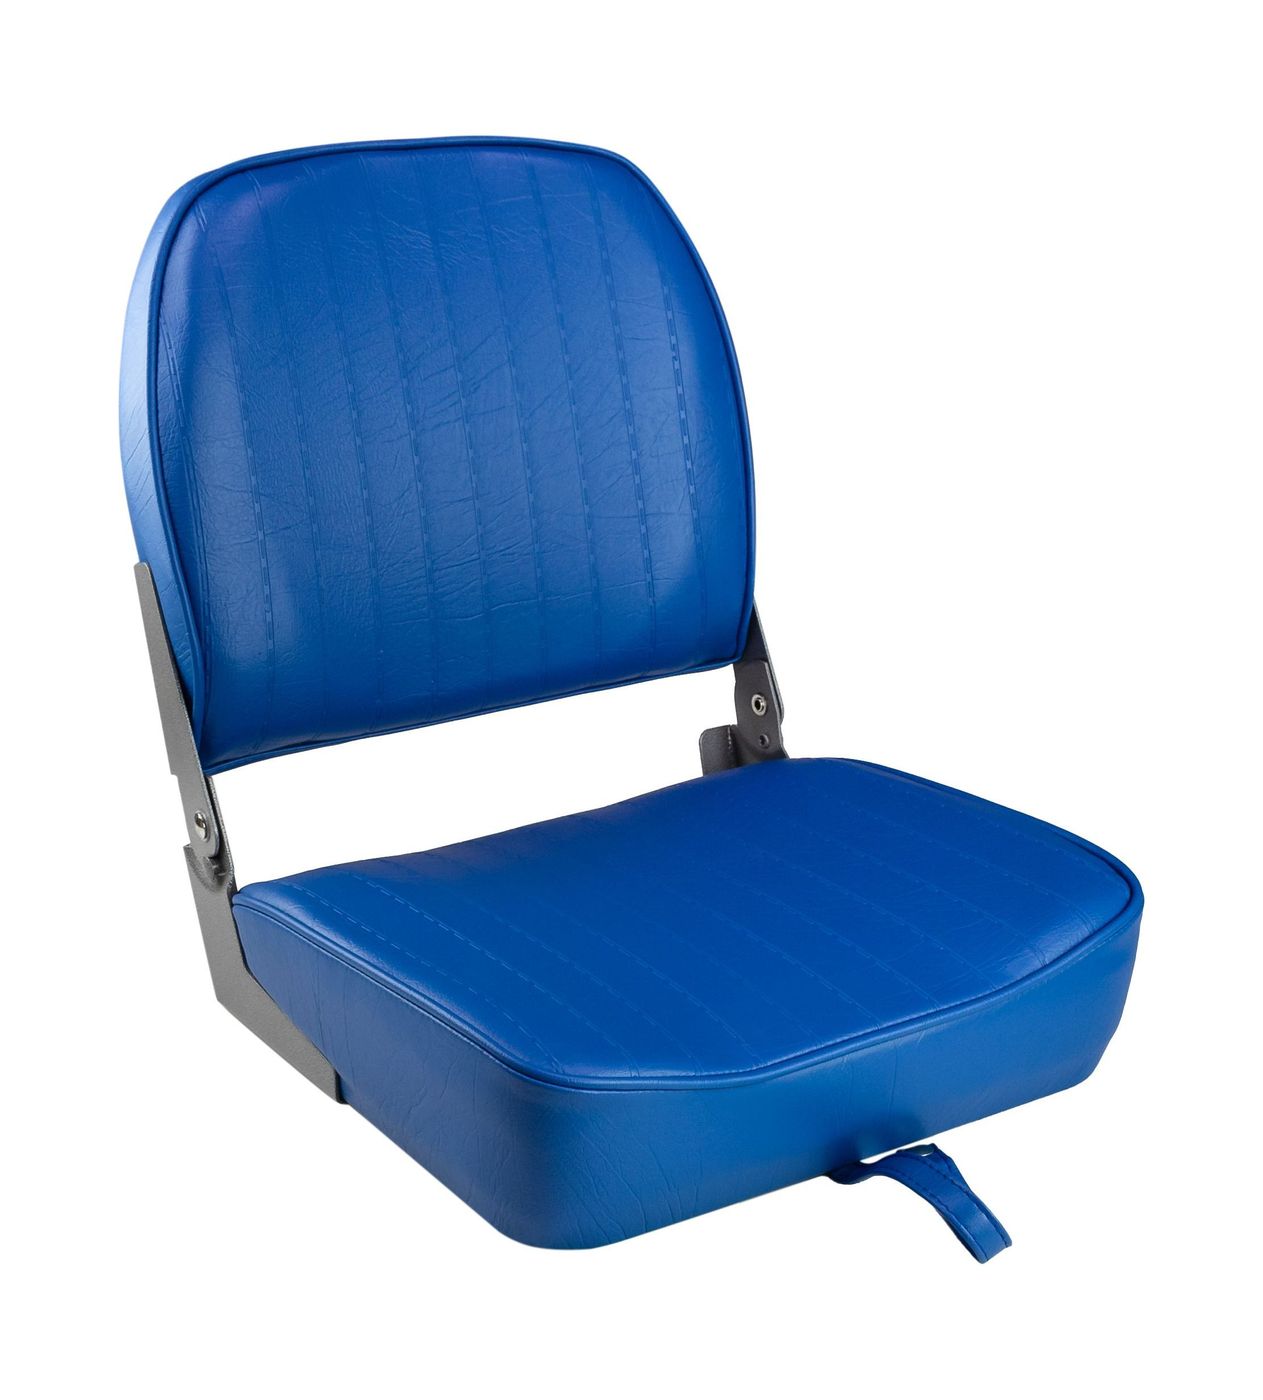 Кресло складное мягкое ECONOMY с низкой спинкой, цвет синий 1040621 сиденье мягкое pro casting обивка синий винил 75104b